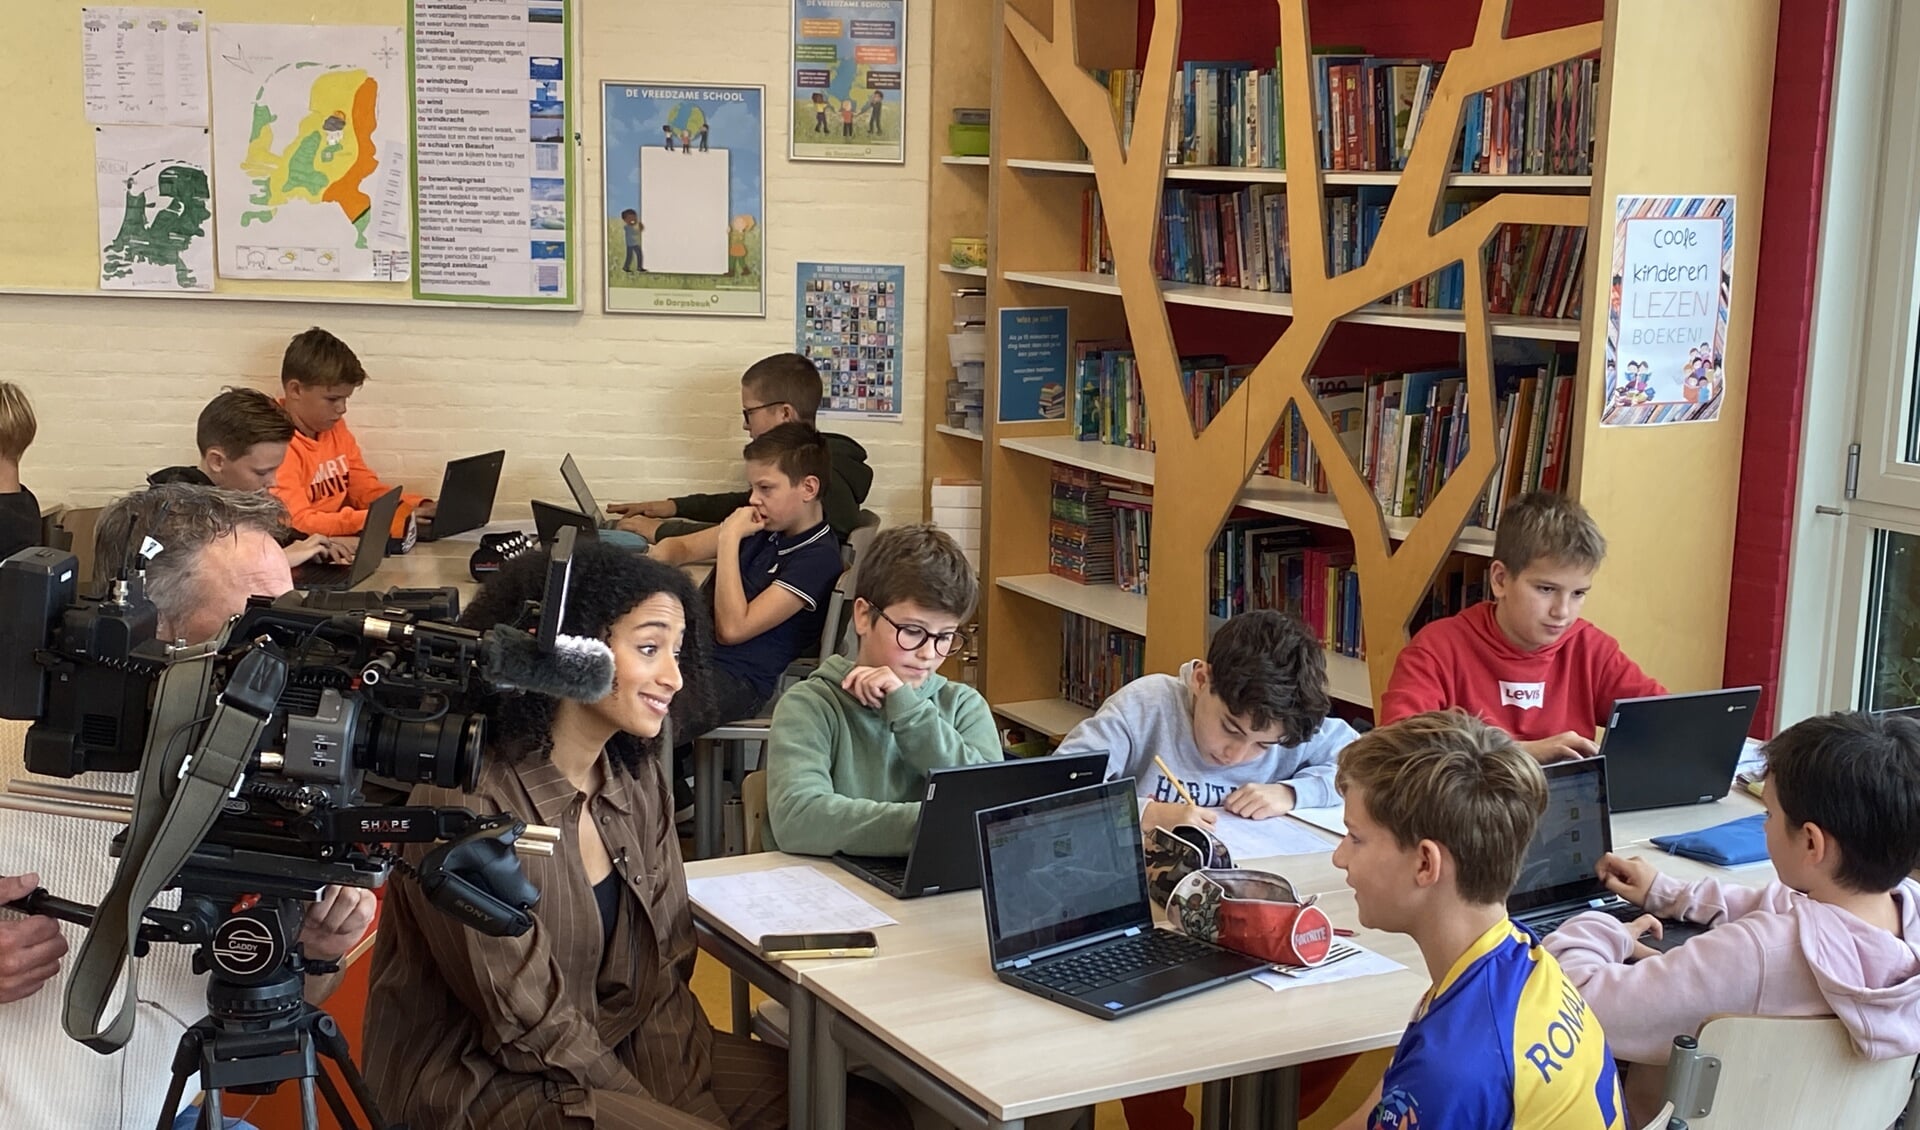  Televisiepresentator en nieuwslezer van het Jeugdjournaal Evita Mac-nack in gesprek met leerlingen van Scherpenzeelse De Dorpsbeuk.